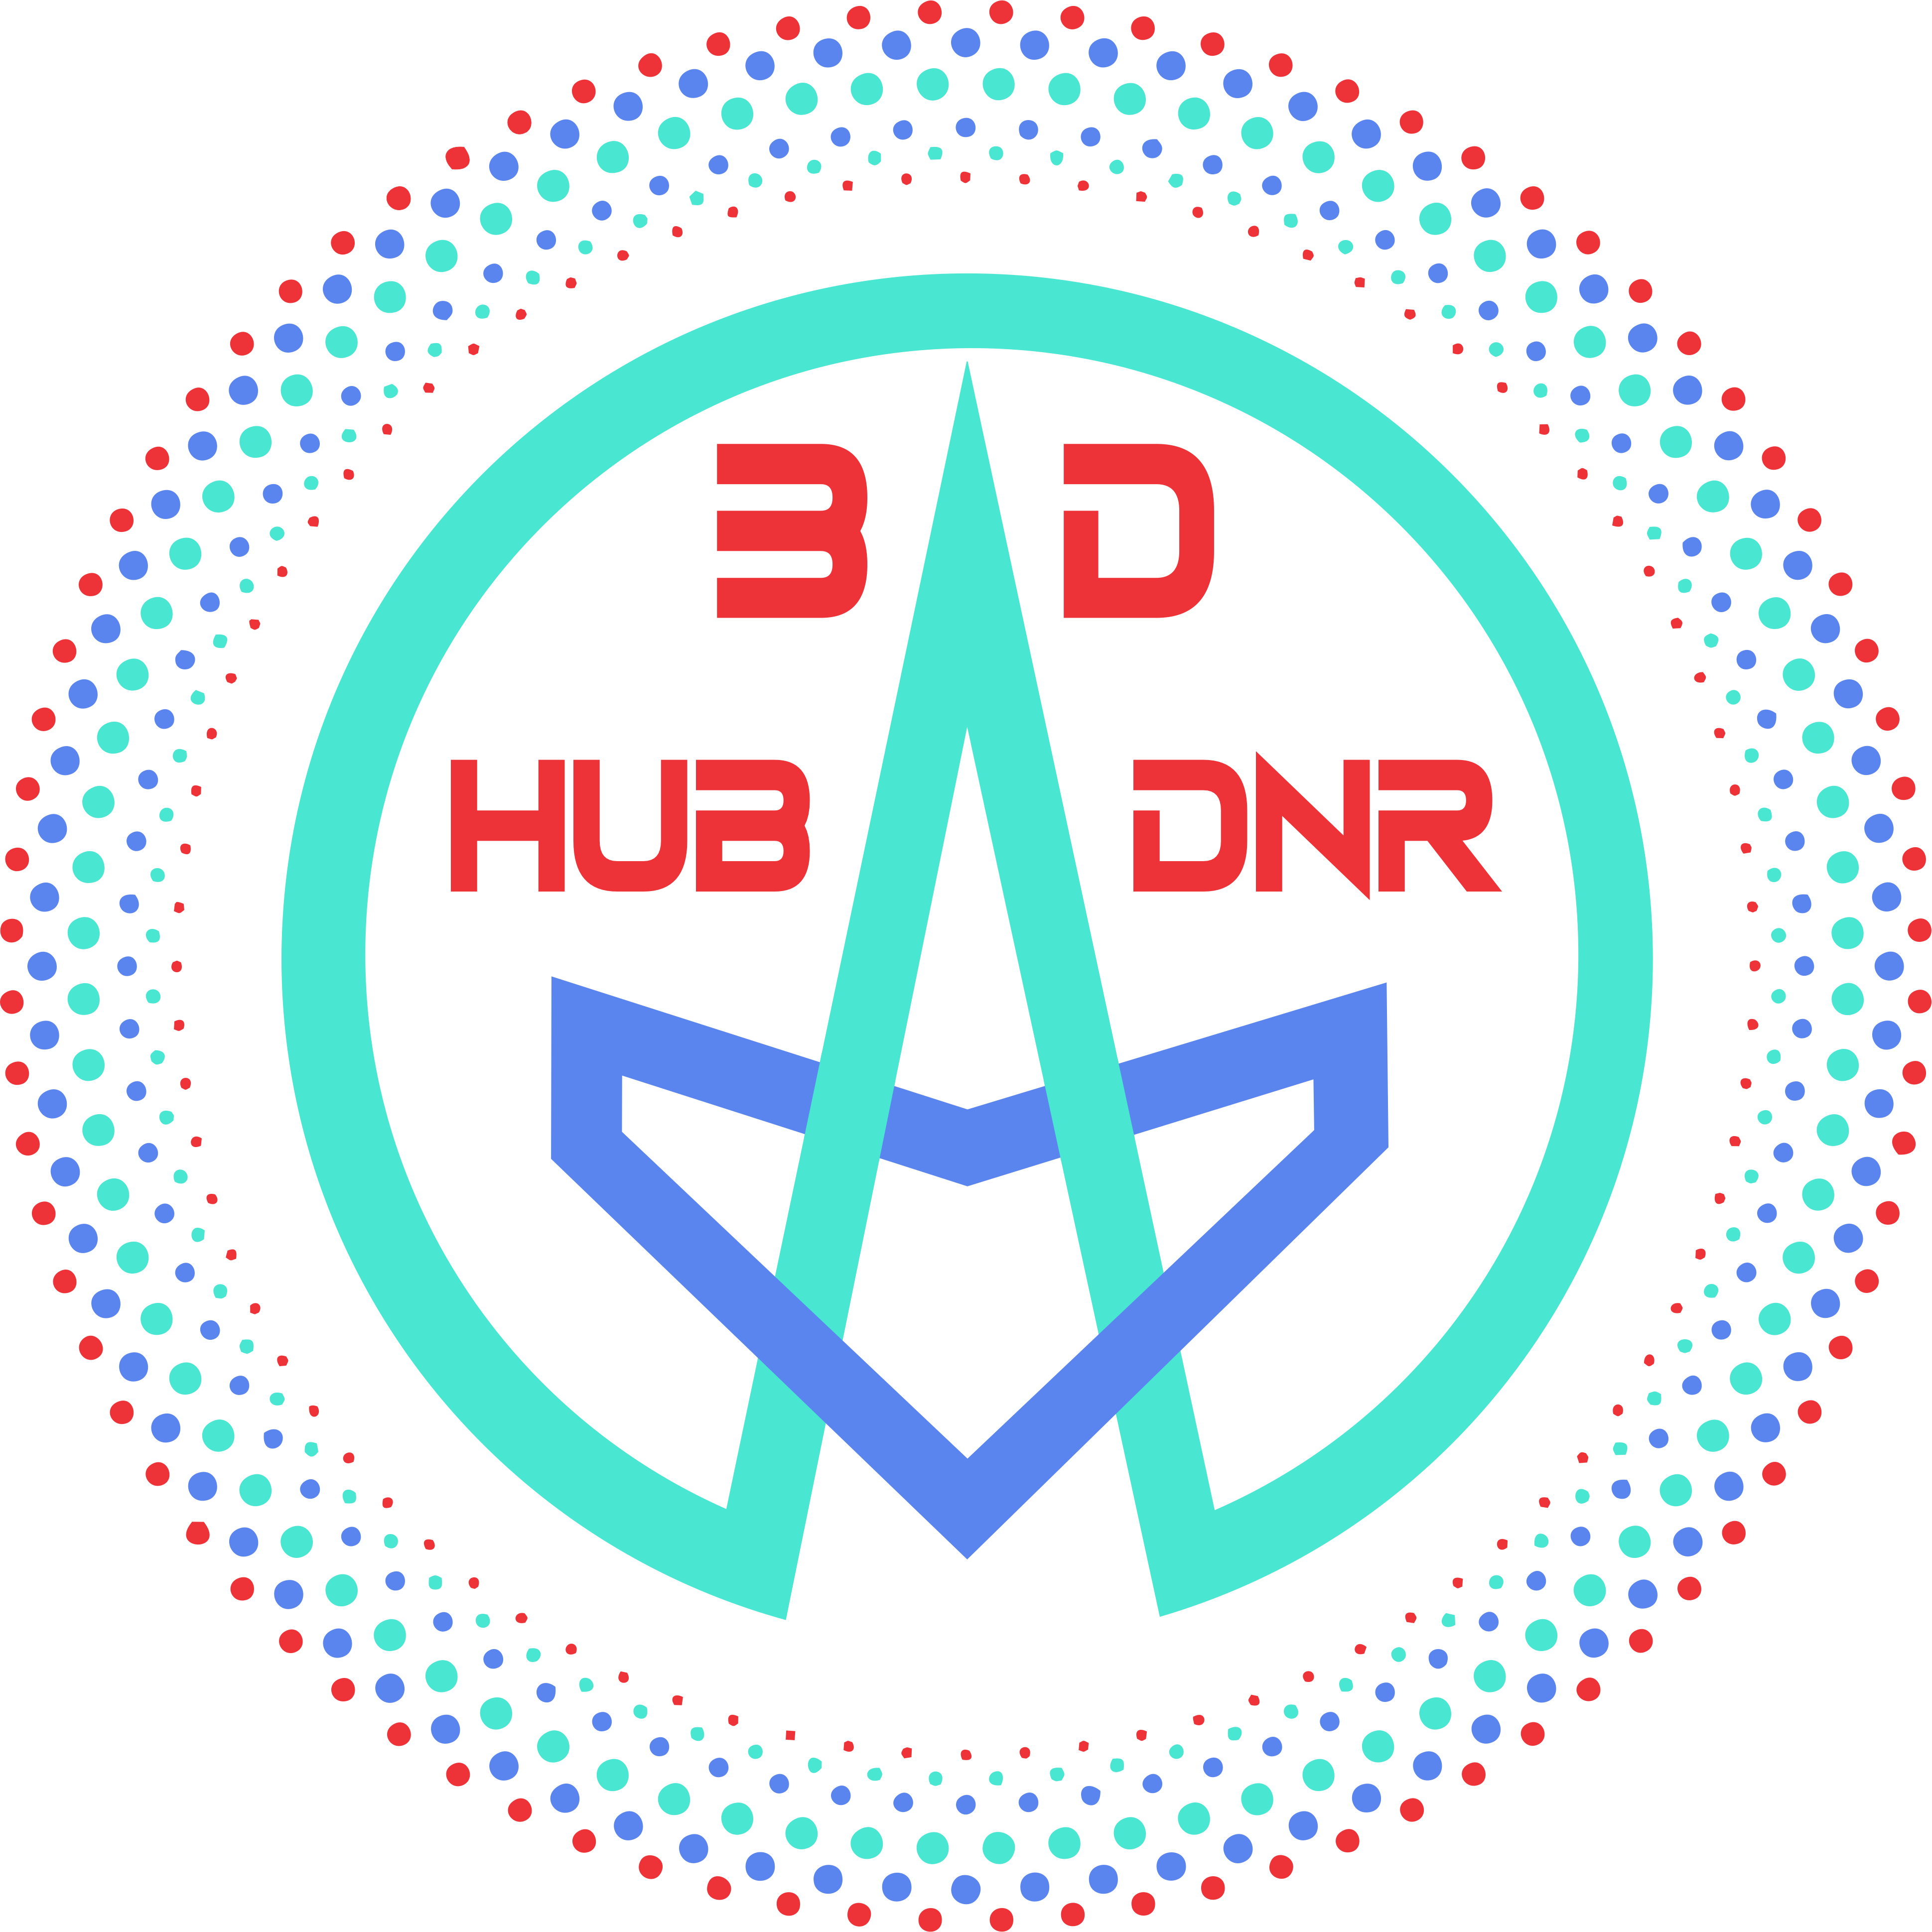 3DHUB-DnR